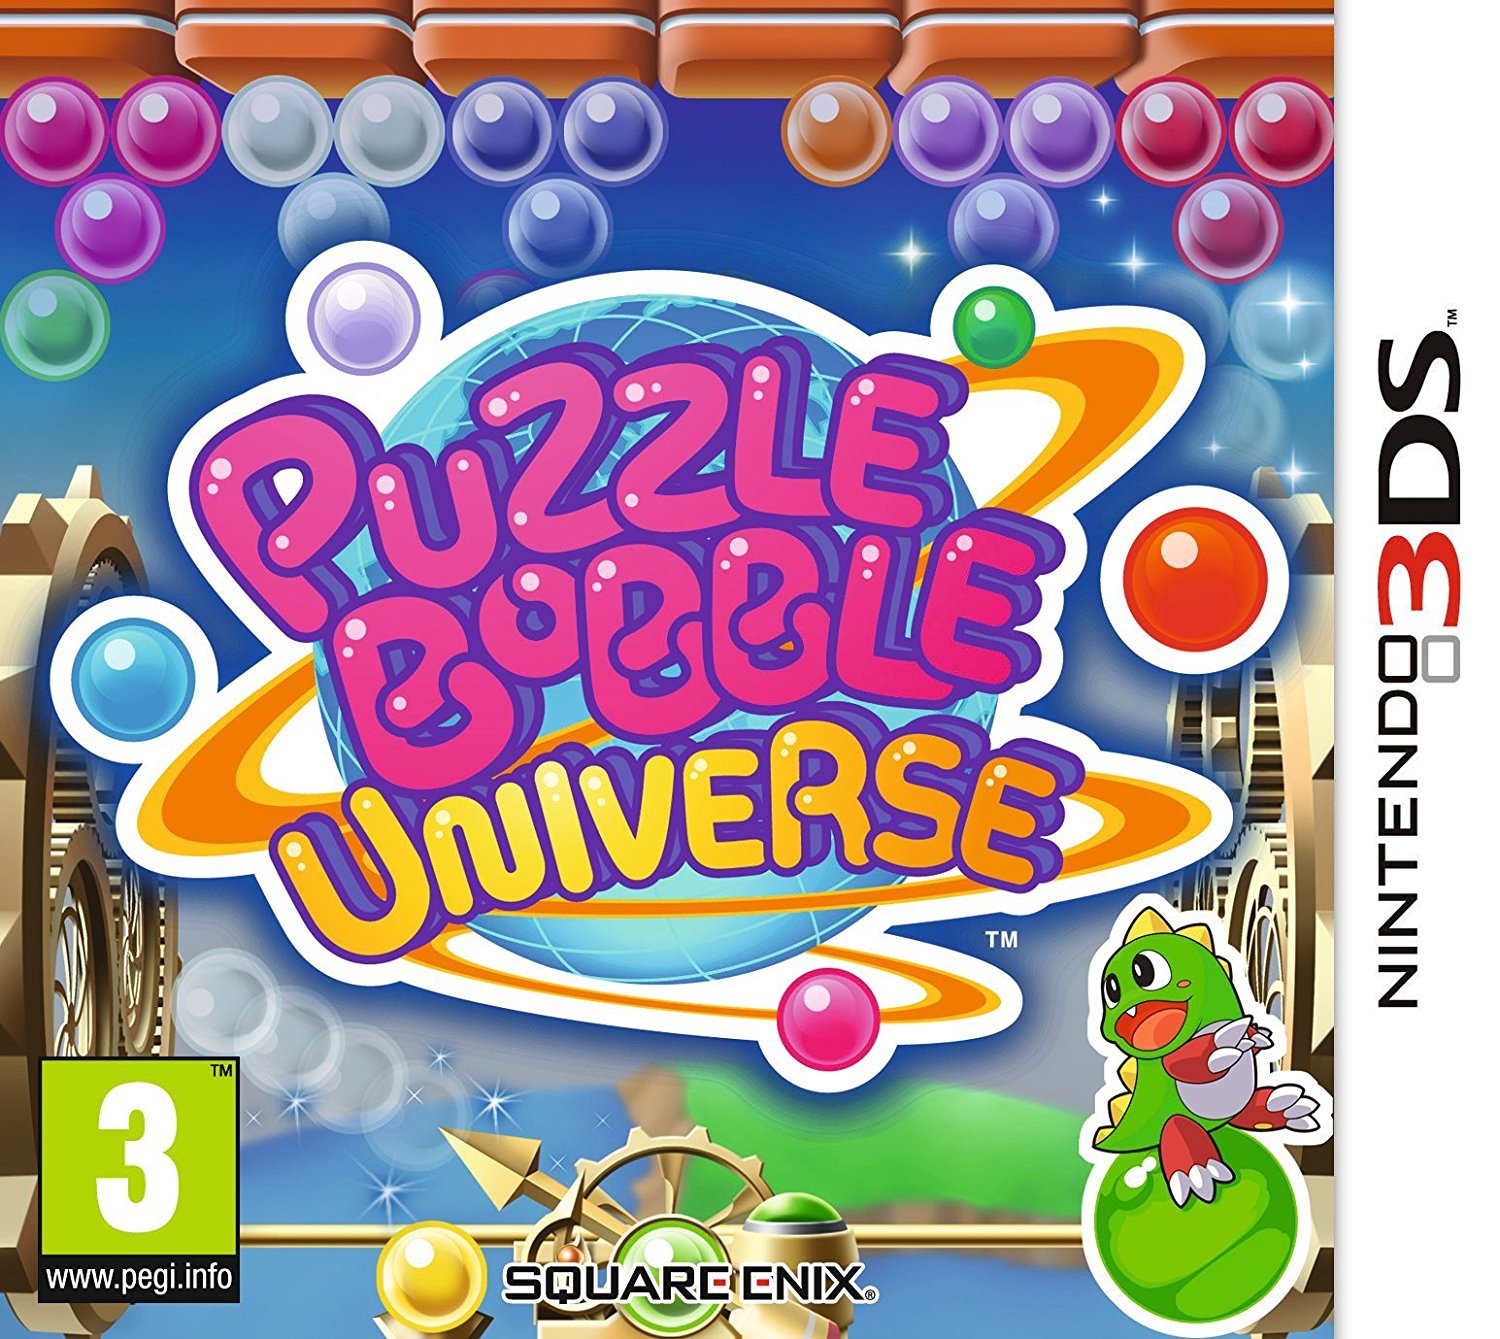 Preços baixos em Bubble Bobble Video Games para Nintendo DS